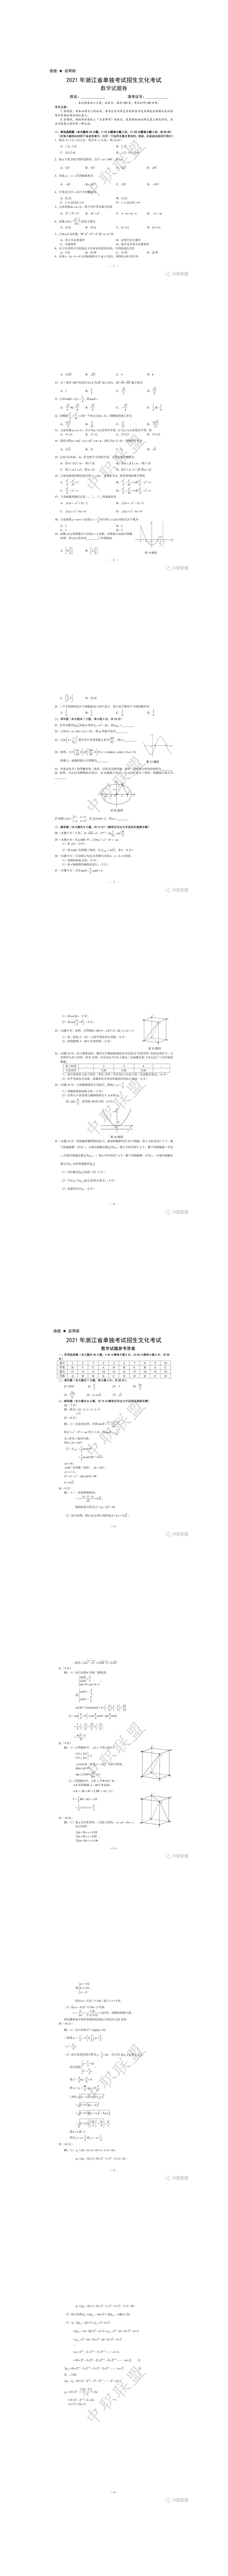 2021年浙江省单独考试招生文化考试数学试题卷及答案